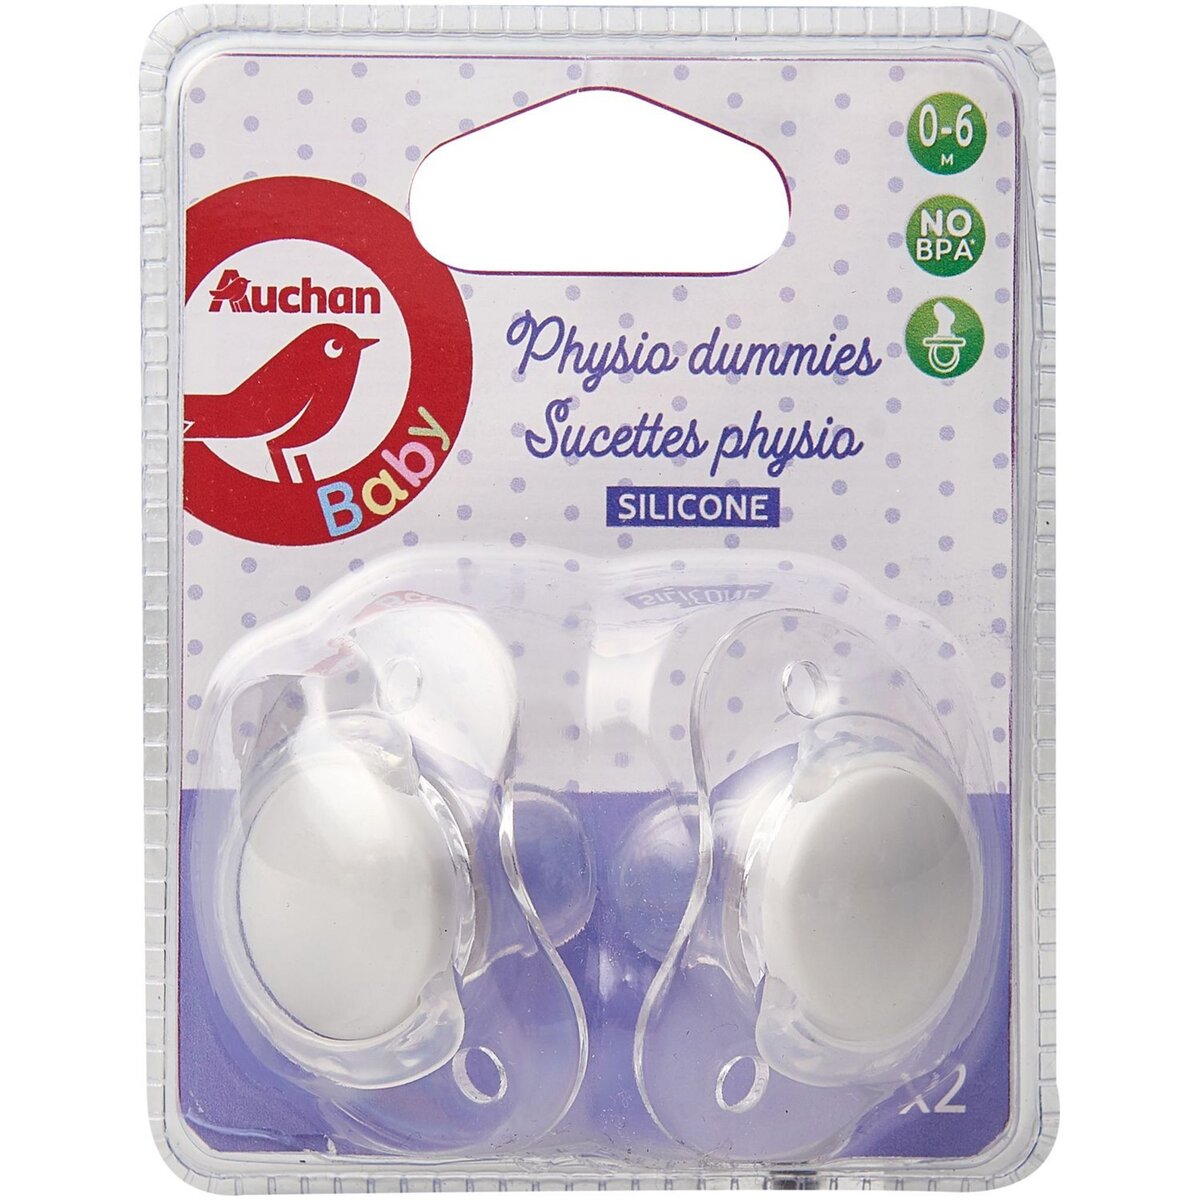 AUCHAN Auchan baby sucette physio en silicone lot de 2 jusque 6 mois lot de 2